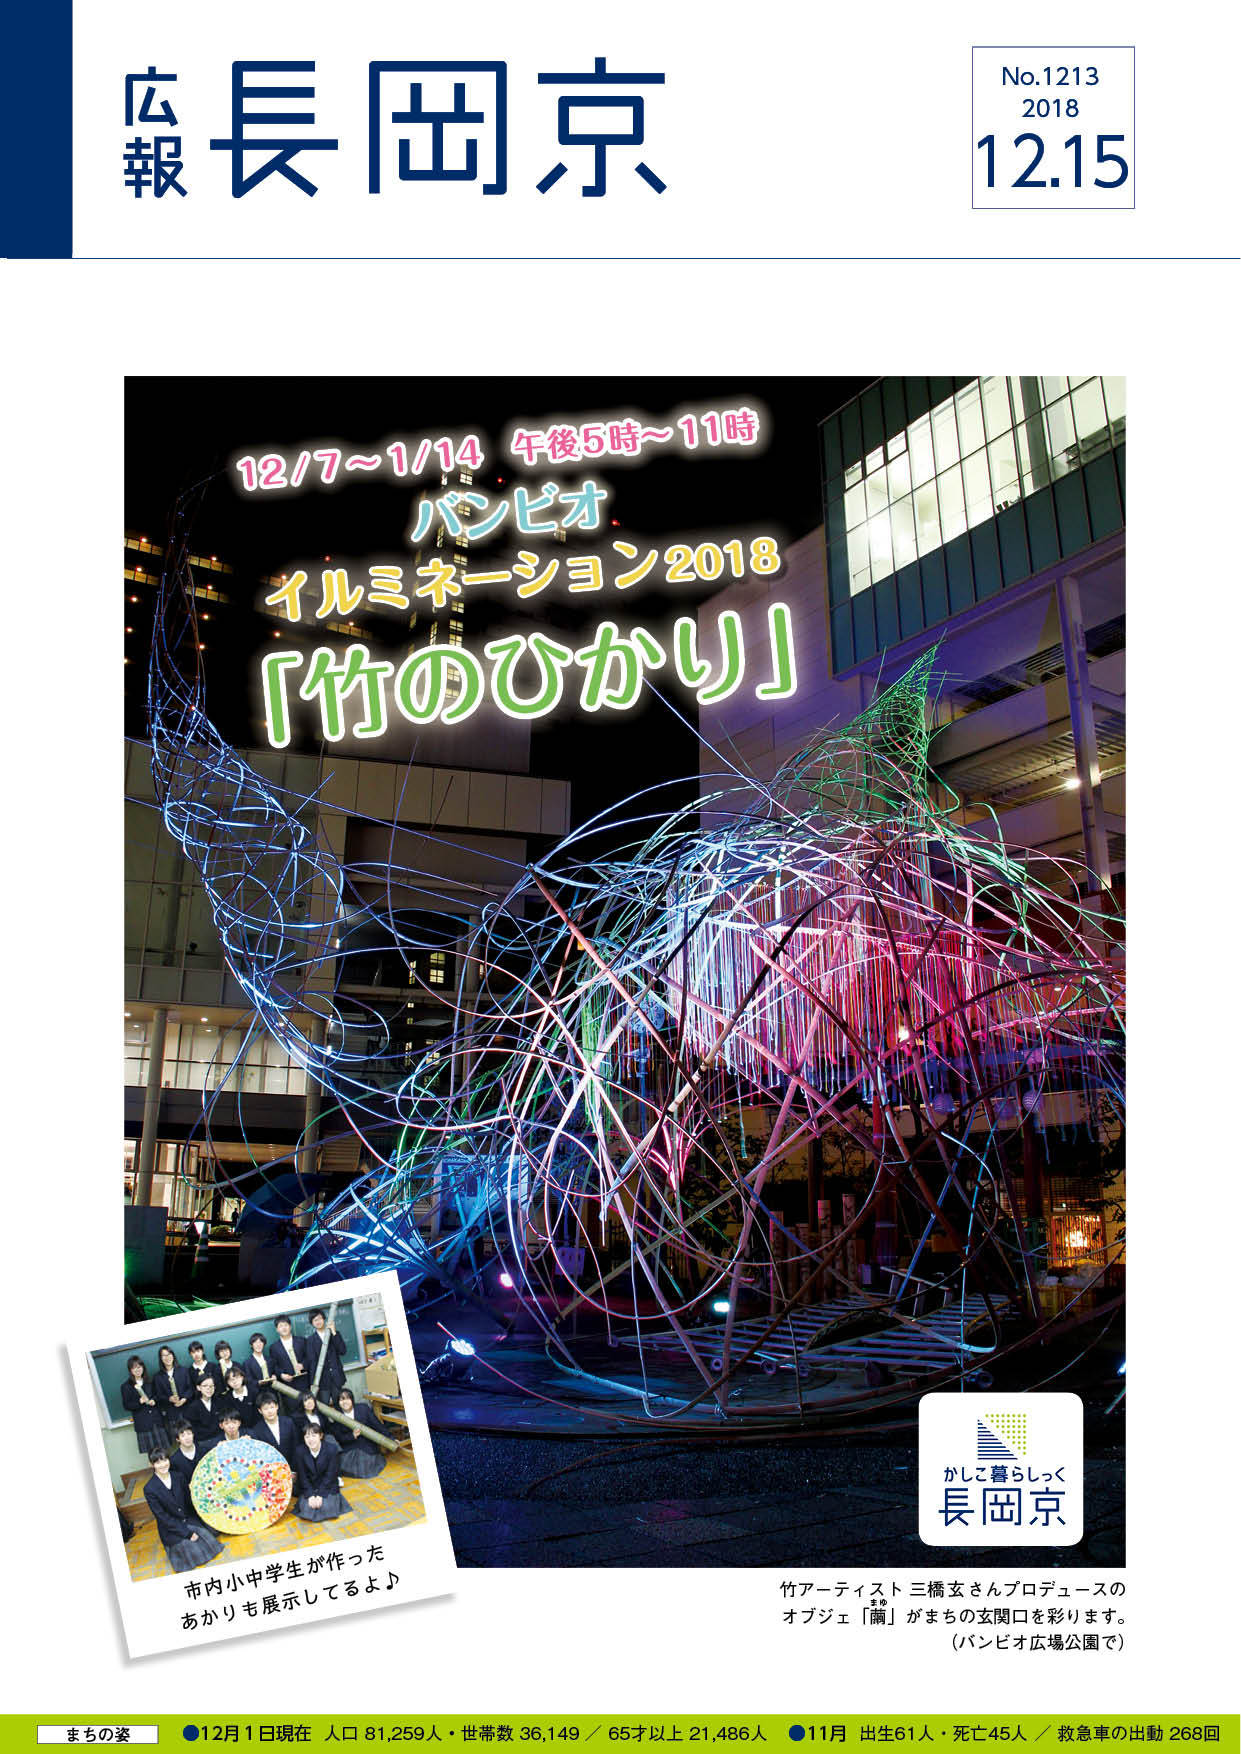 12月15日号の表紙画像。バンビオイルミネーションで展示されている「繭」の写真と、長岡中学校の生徒が、作った作品と一緒に写っている写真